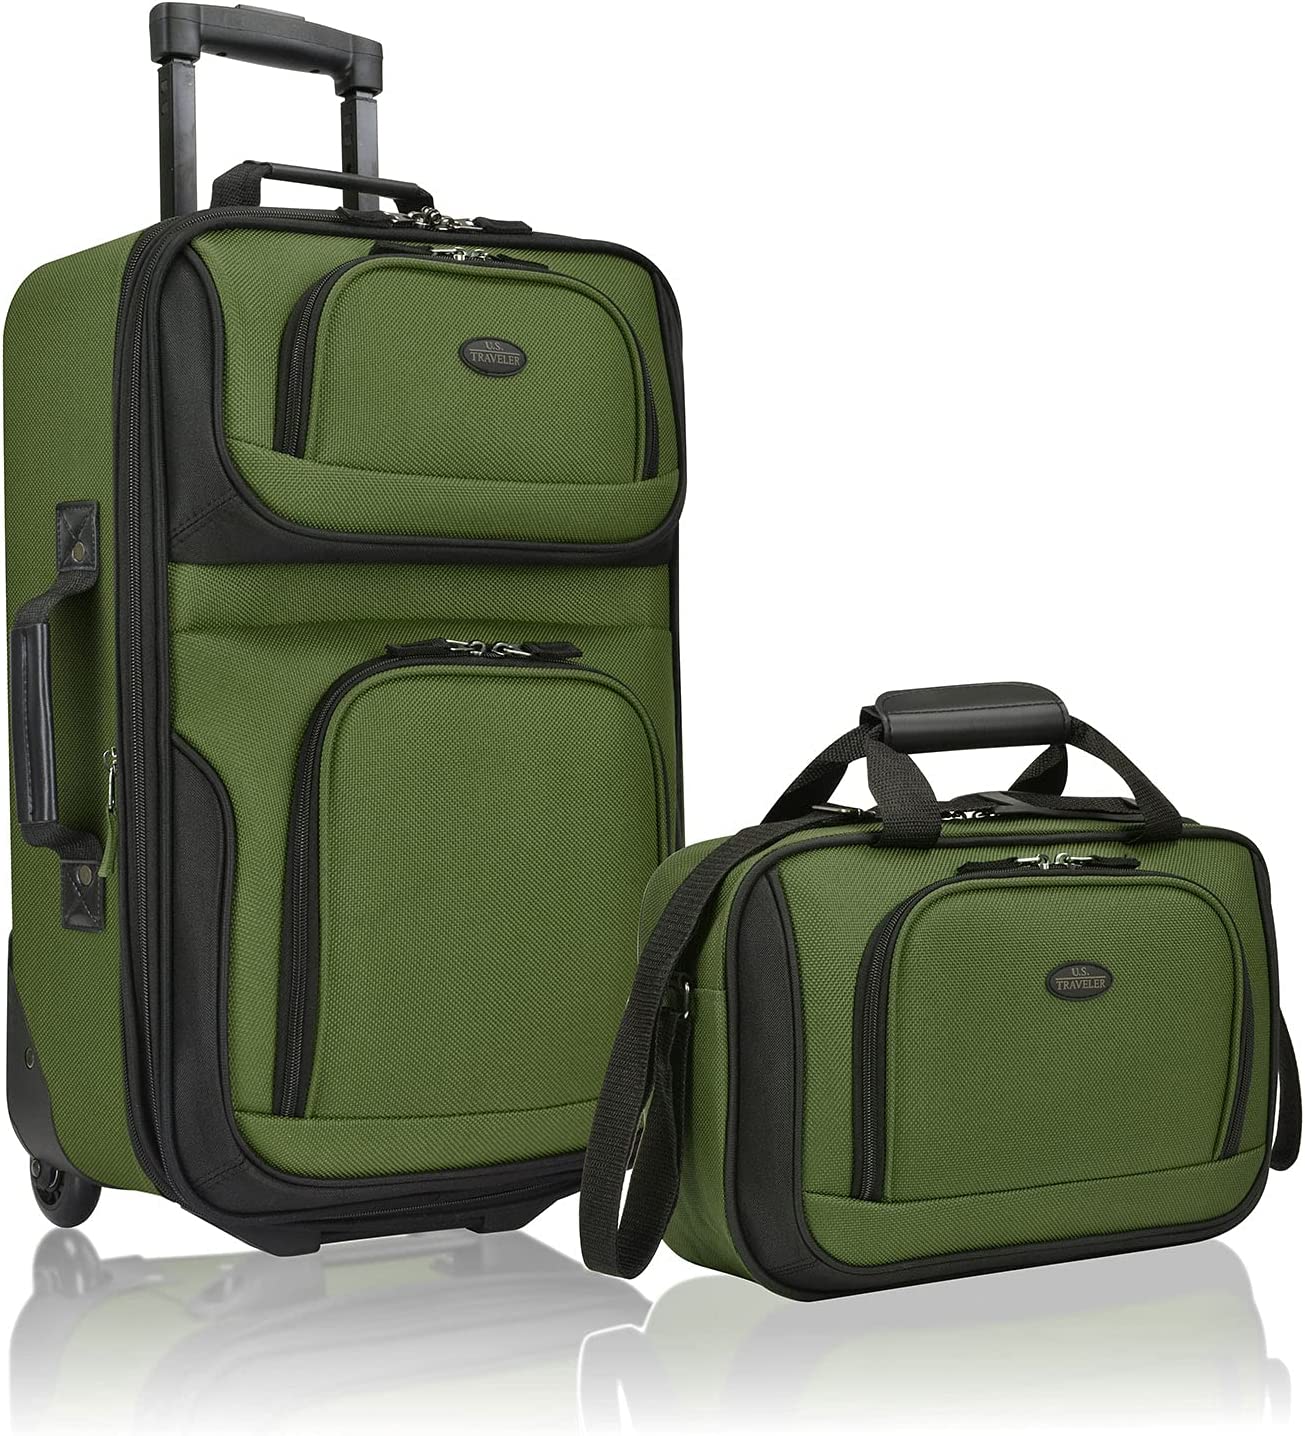 U.S Traveler Rio Easy Carry Luggage Set, 2-Piece